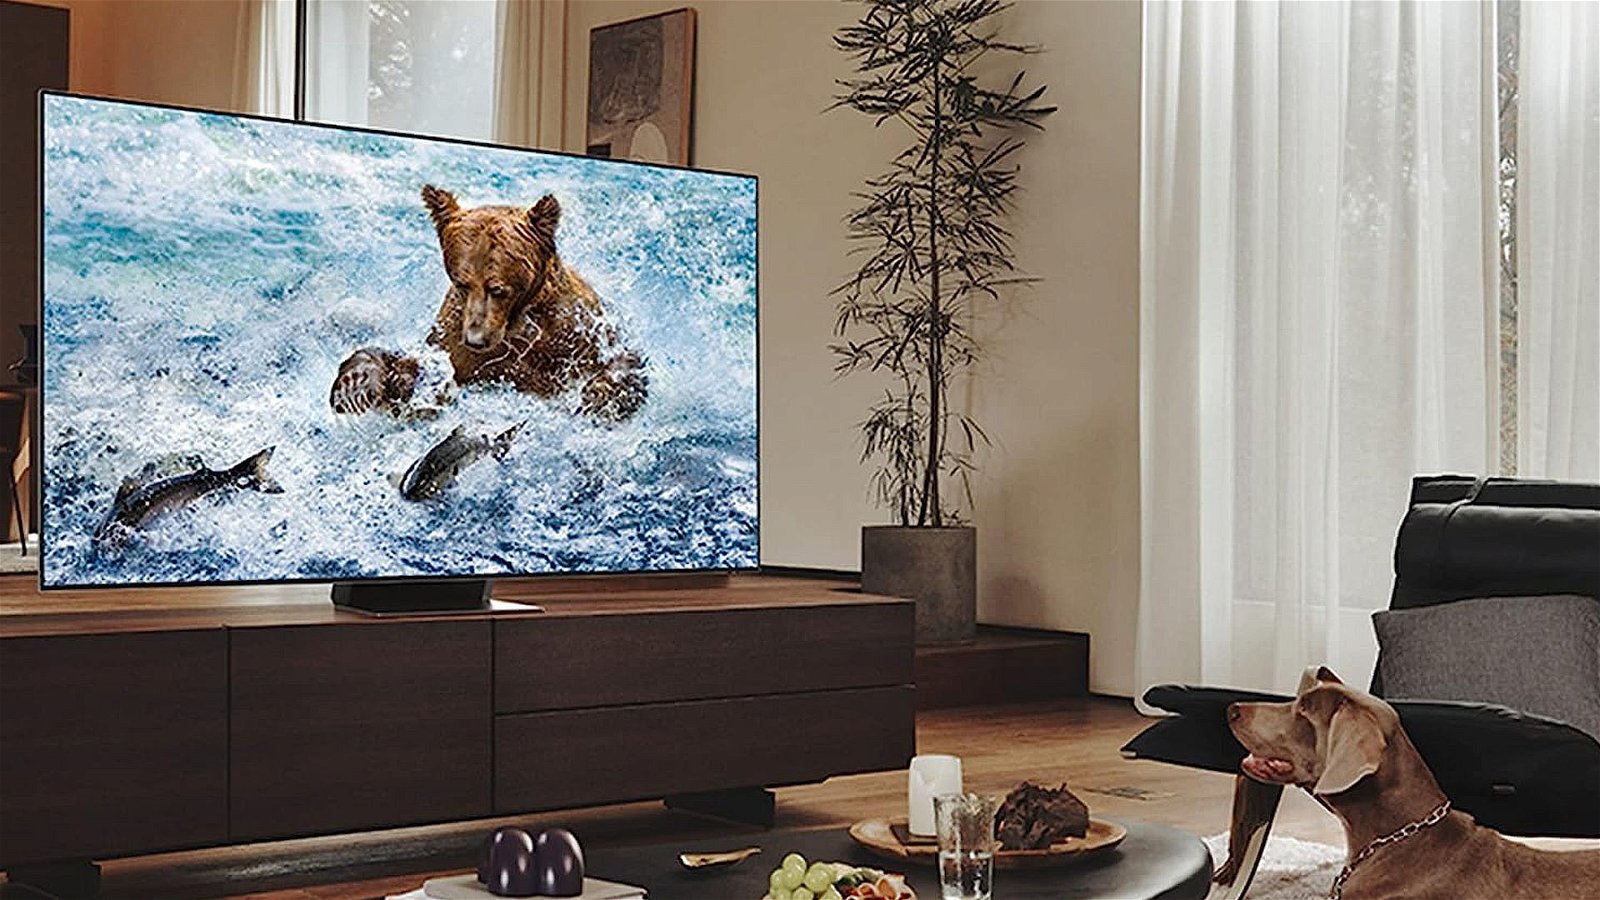 Smart TV Samsung 55" 8K a un super prezzo! Oltre il 60% di sconto!